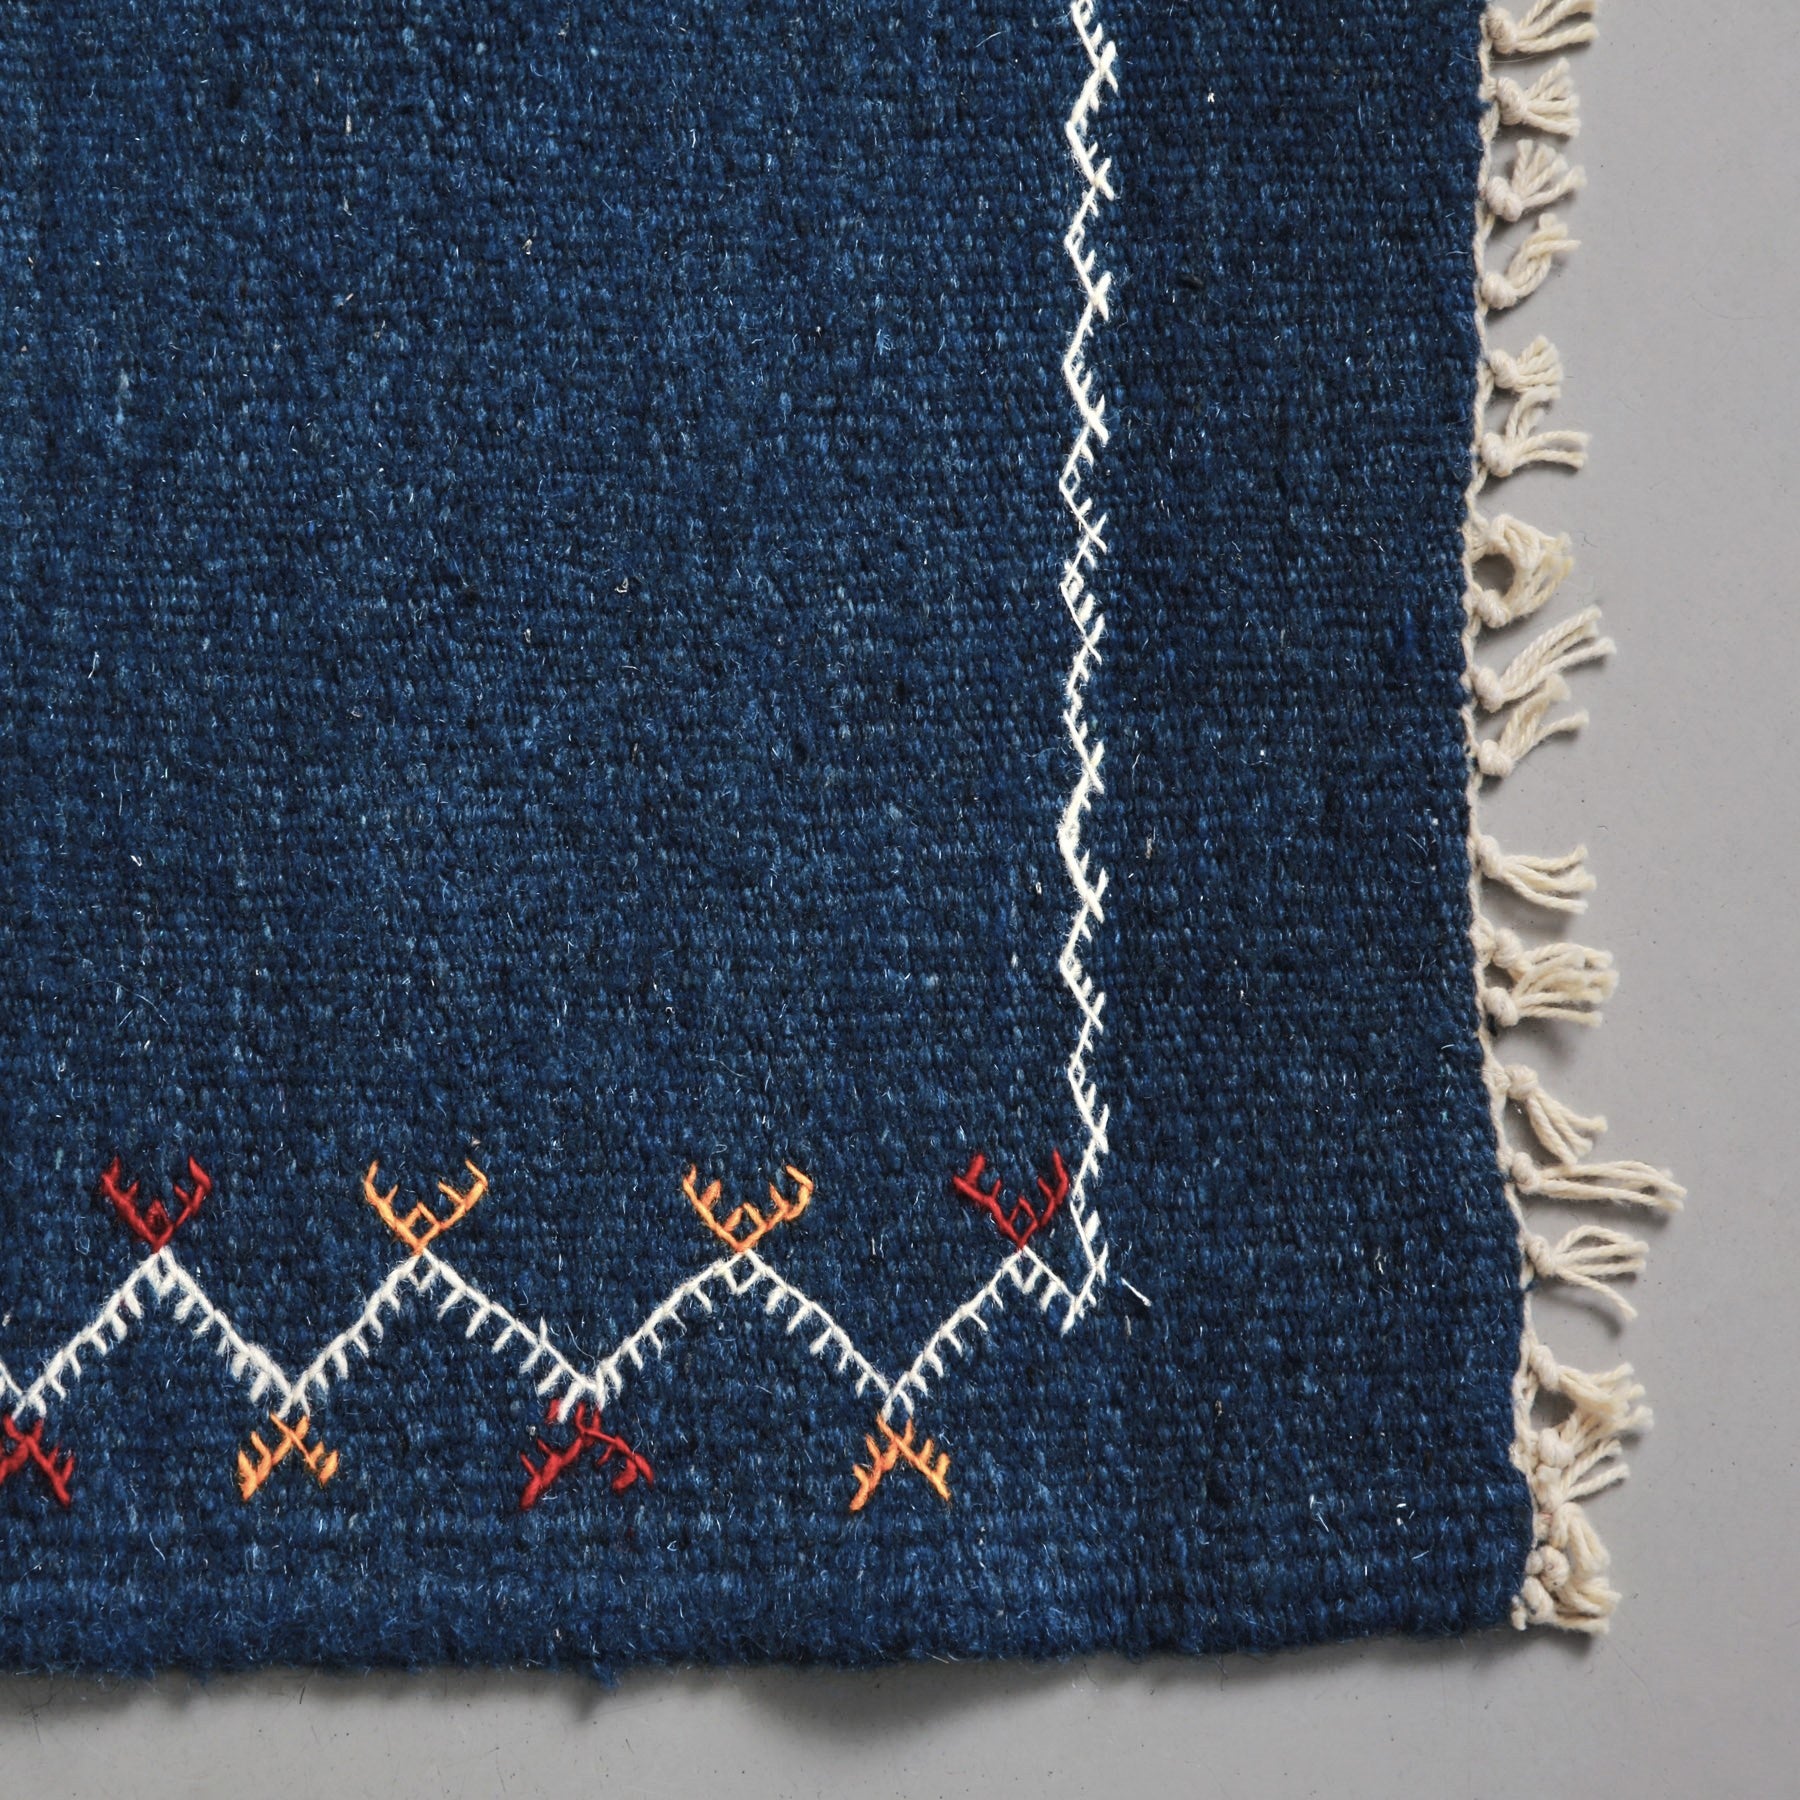 dettaglio della corta frangia sottile e della cornice ricamata in bianca di un Tappeto marocchino akhnif a tessitura piatta  blu